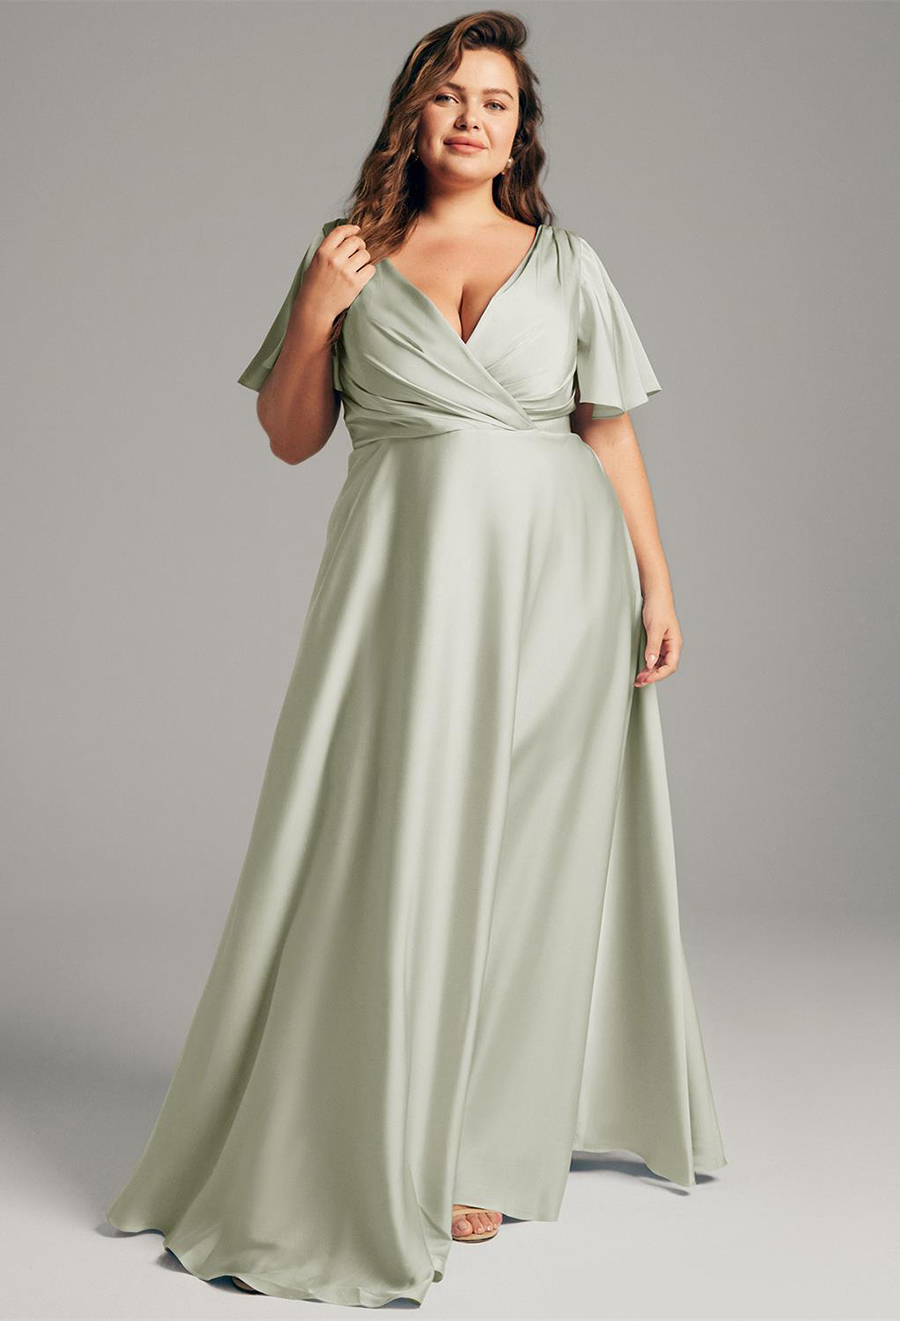 Sage Green bridesmaid dress from AW Bridal